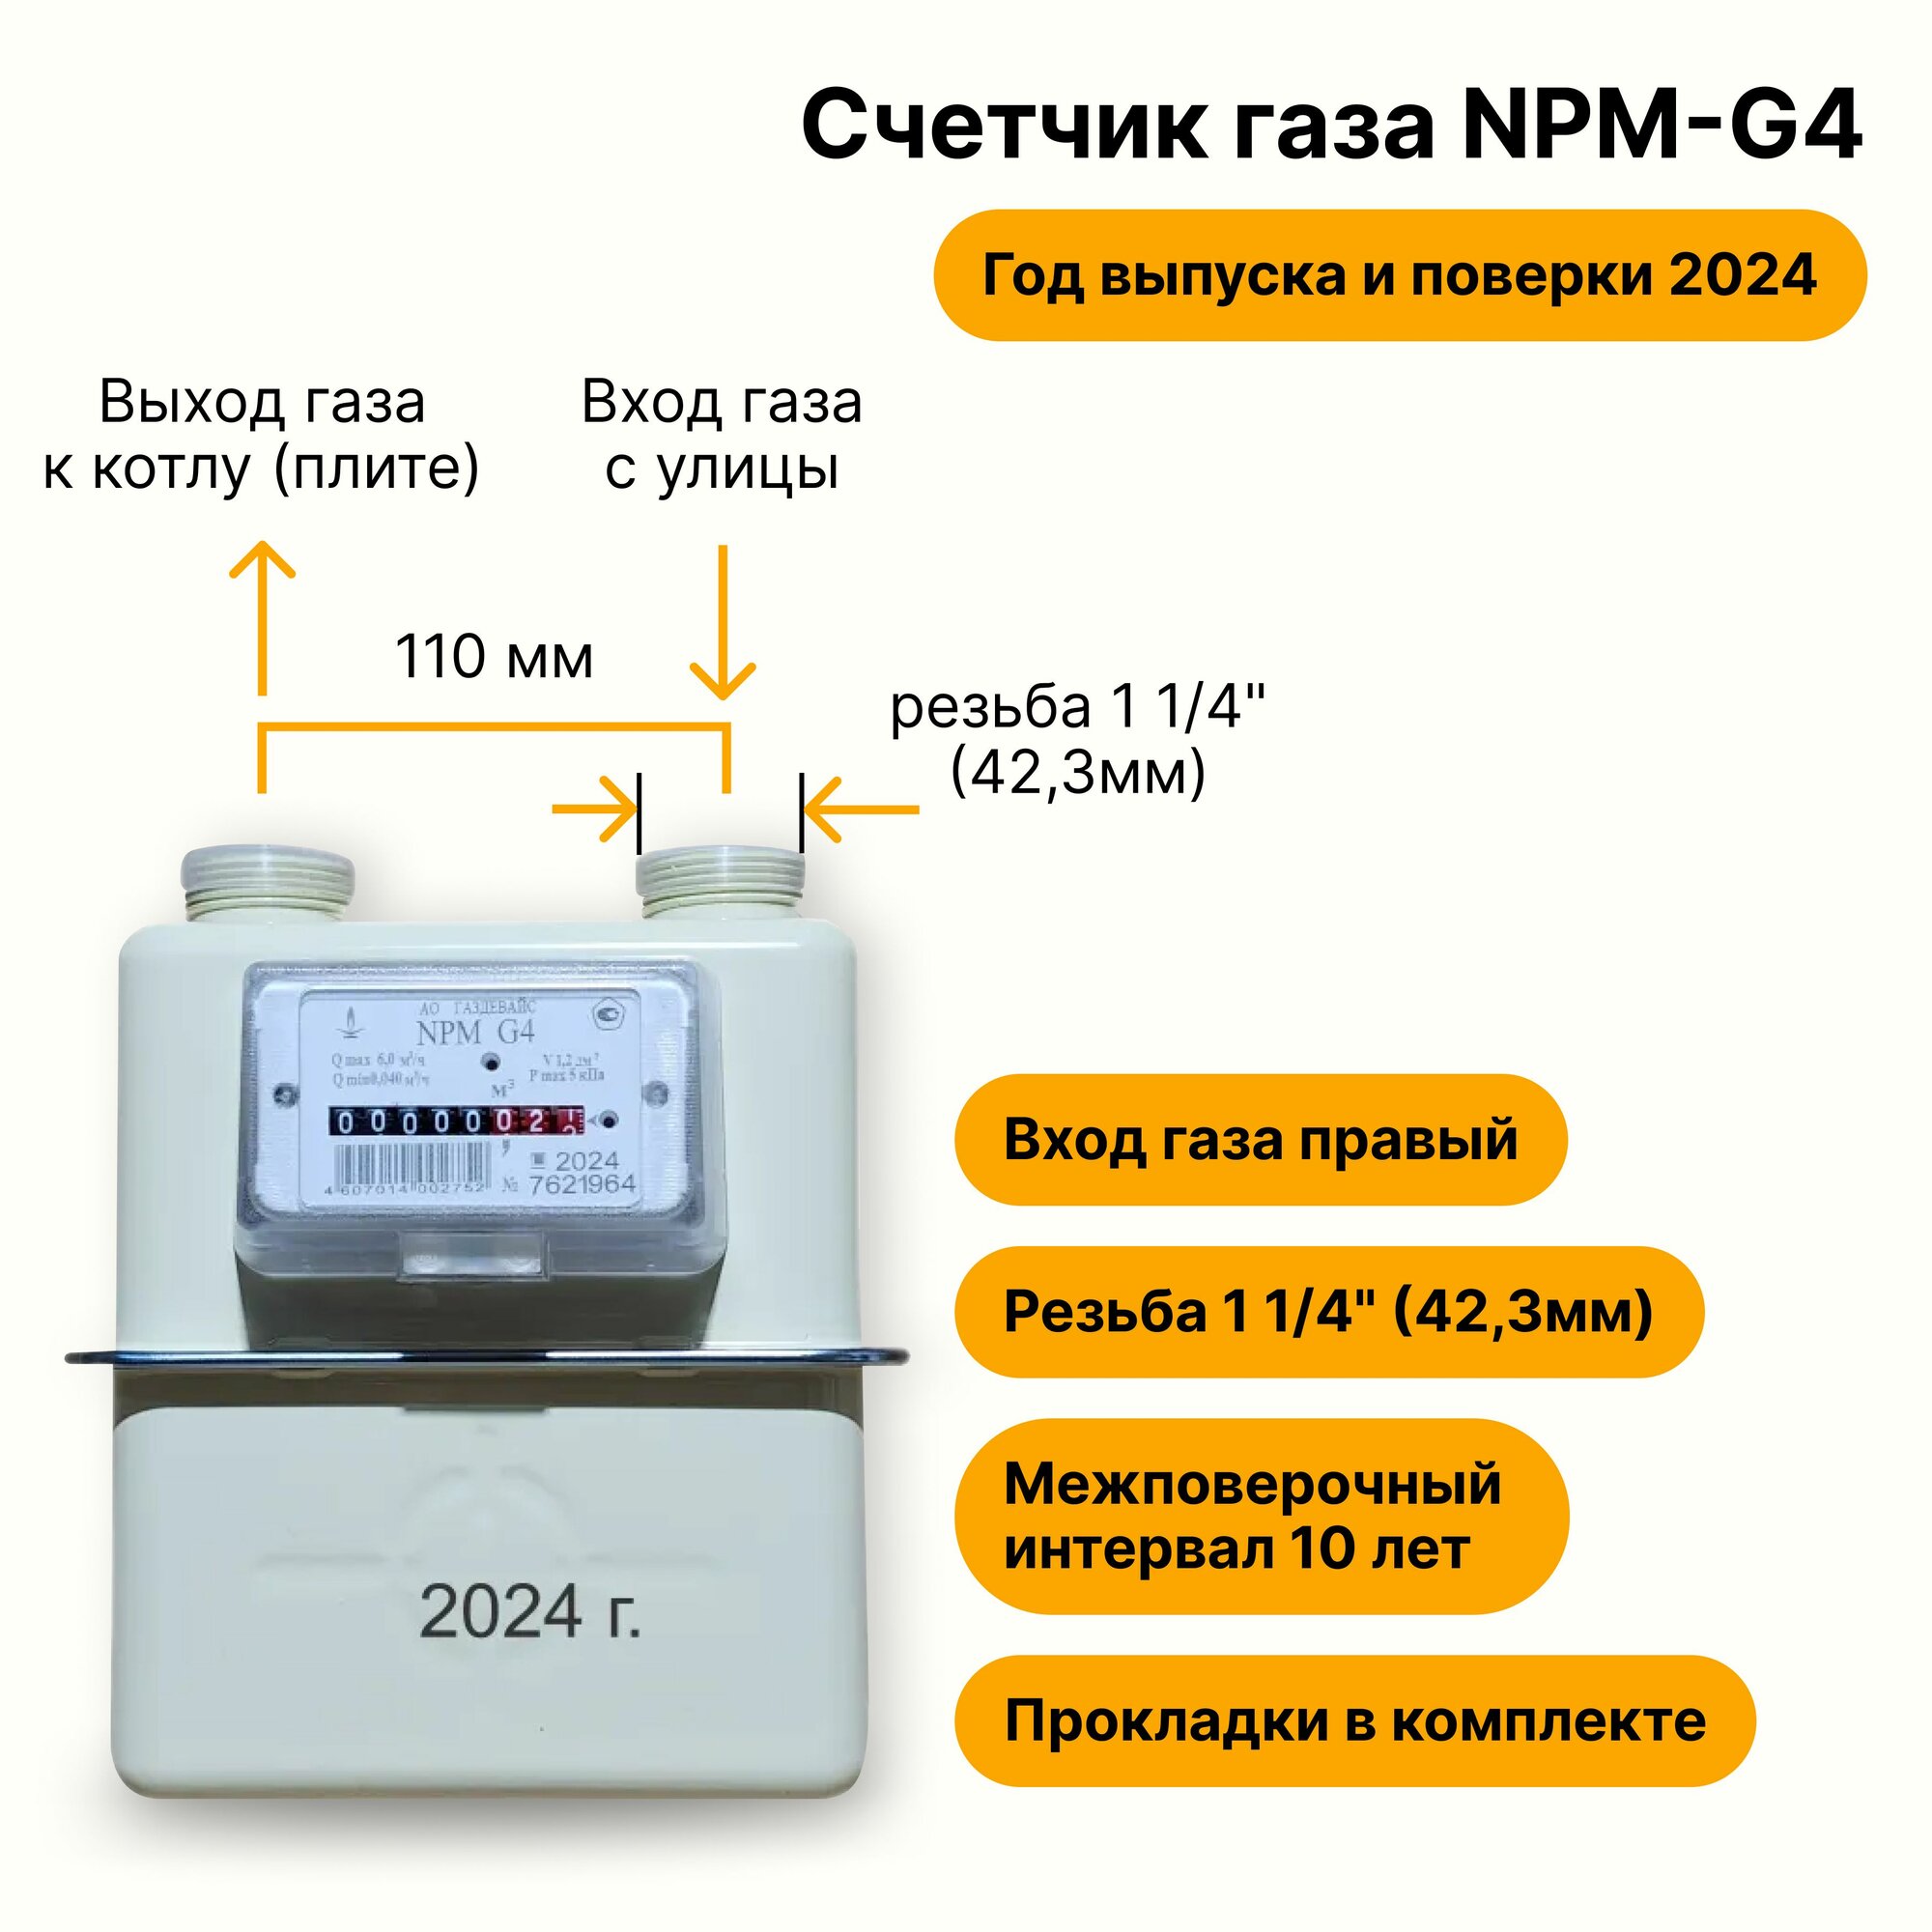 NPM-G4 (вход газа правый, резьба 1 1/4", прокладки В комплекте) 2024 года выпуска и поверки